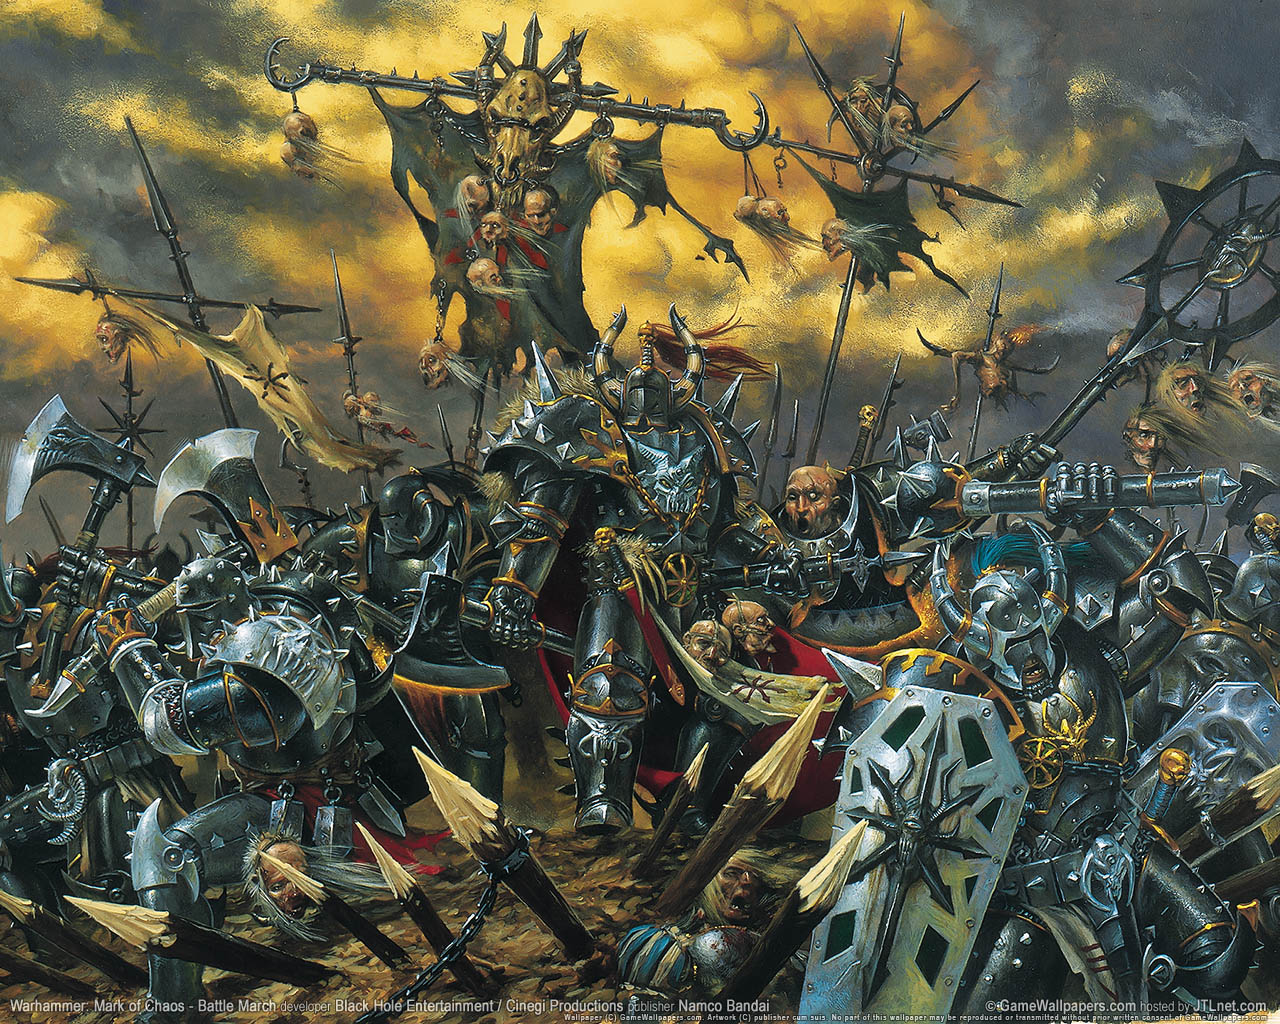 Warhammer: Mark of Chaos - Battle March fond d'cran 01 1280x1024